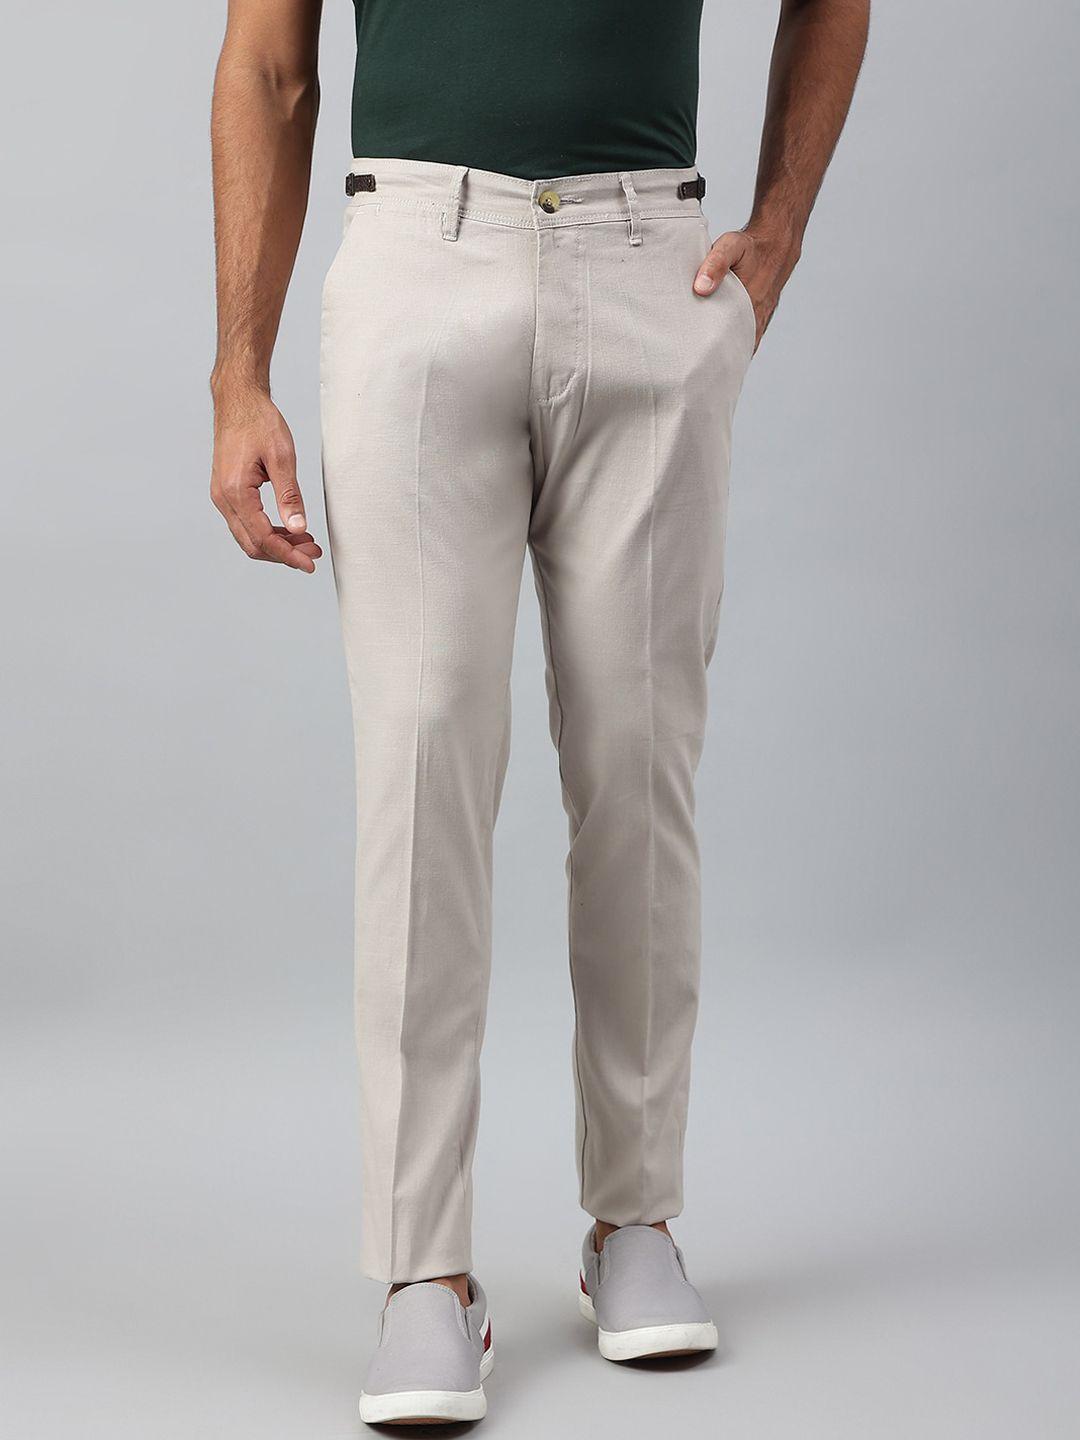 mr-button-men-beige-slim-fit-trousers